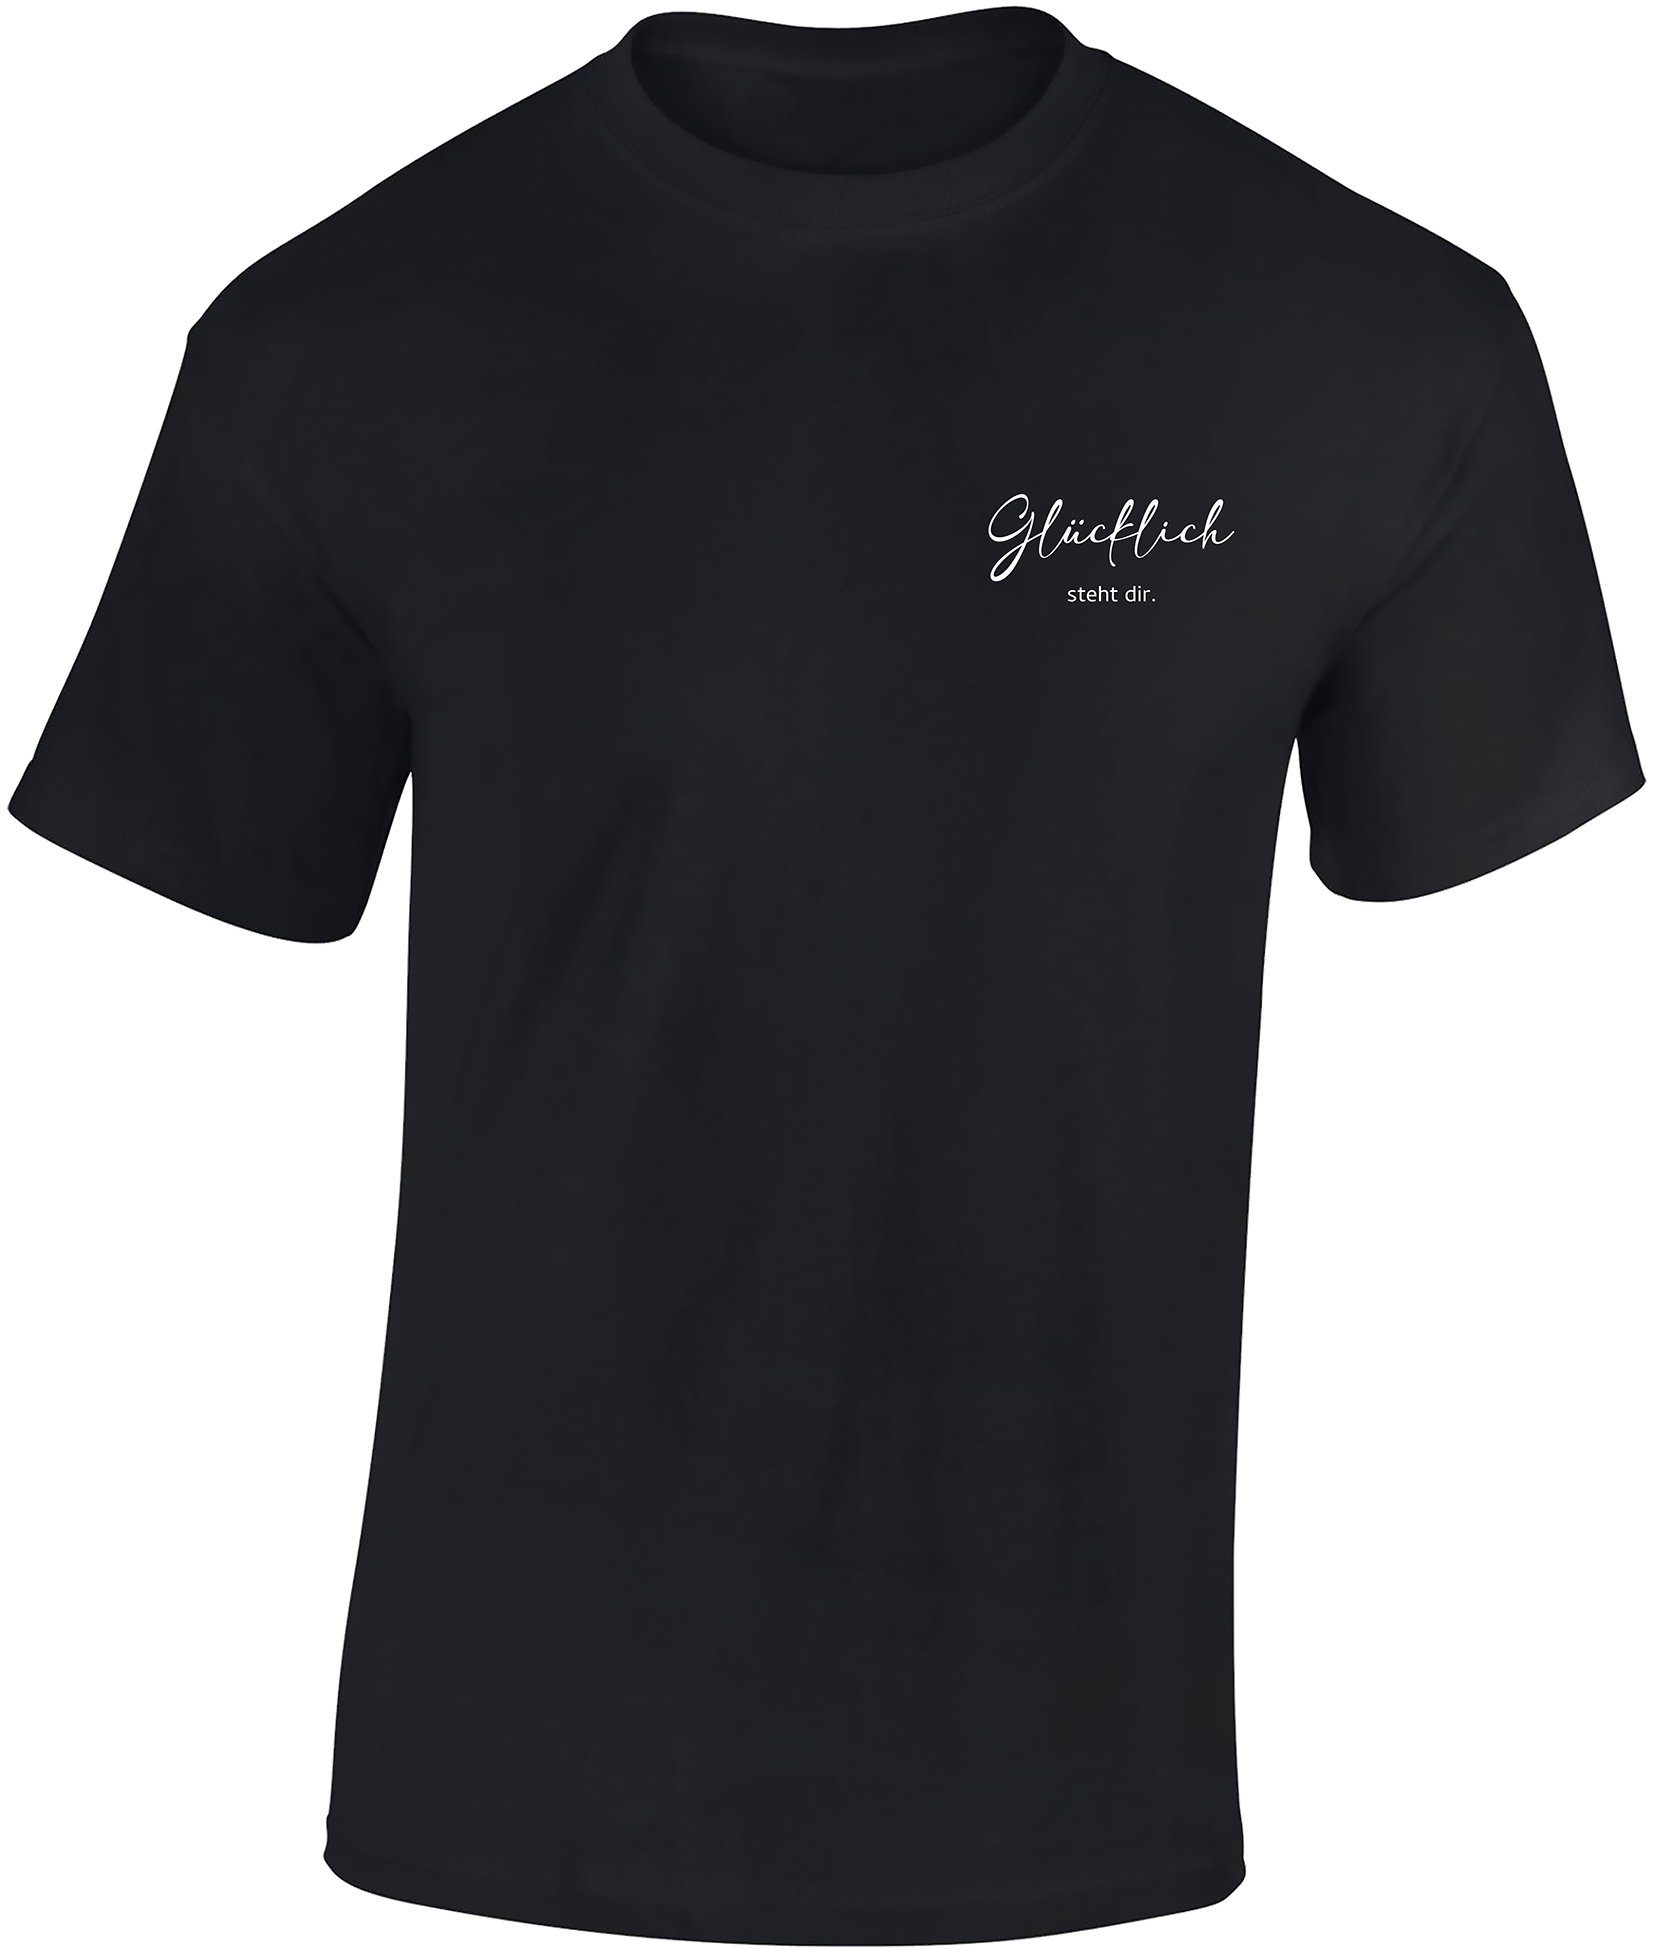 Baddery Print-Shirt Herren T-Shirt : Glücklich steht dir - Funshirts für Männer, hochwertiger Siebdruck, aus Baumwolle